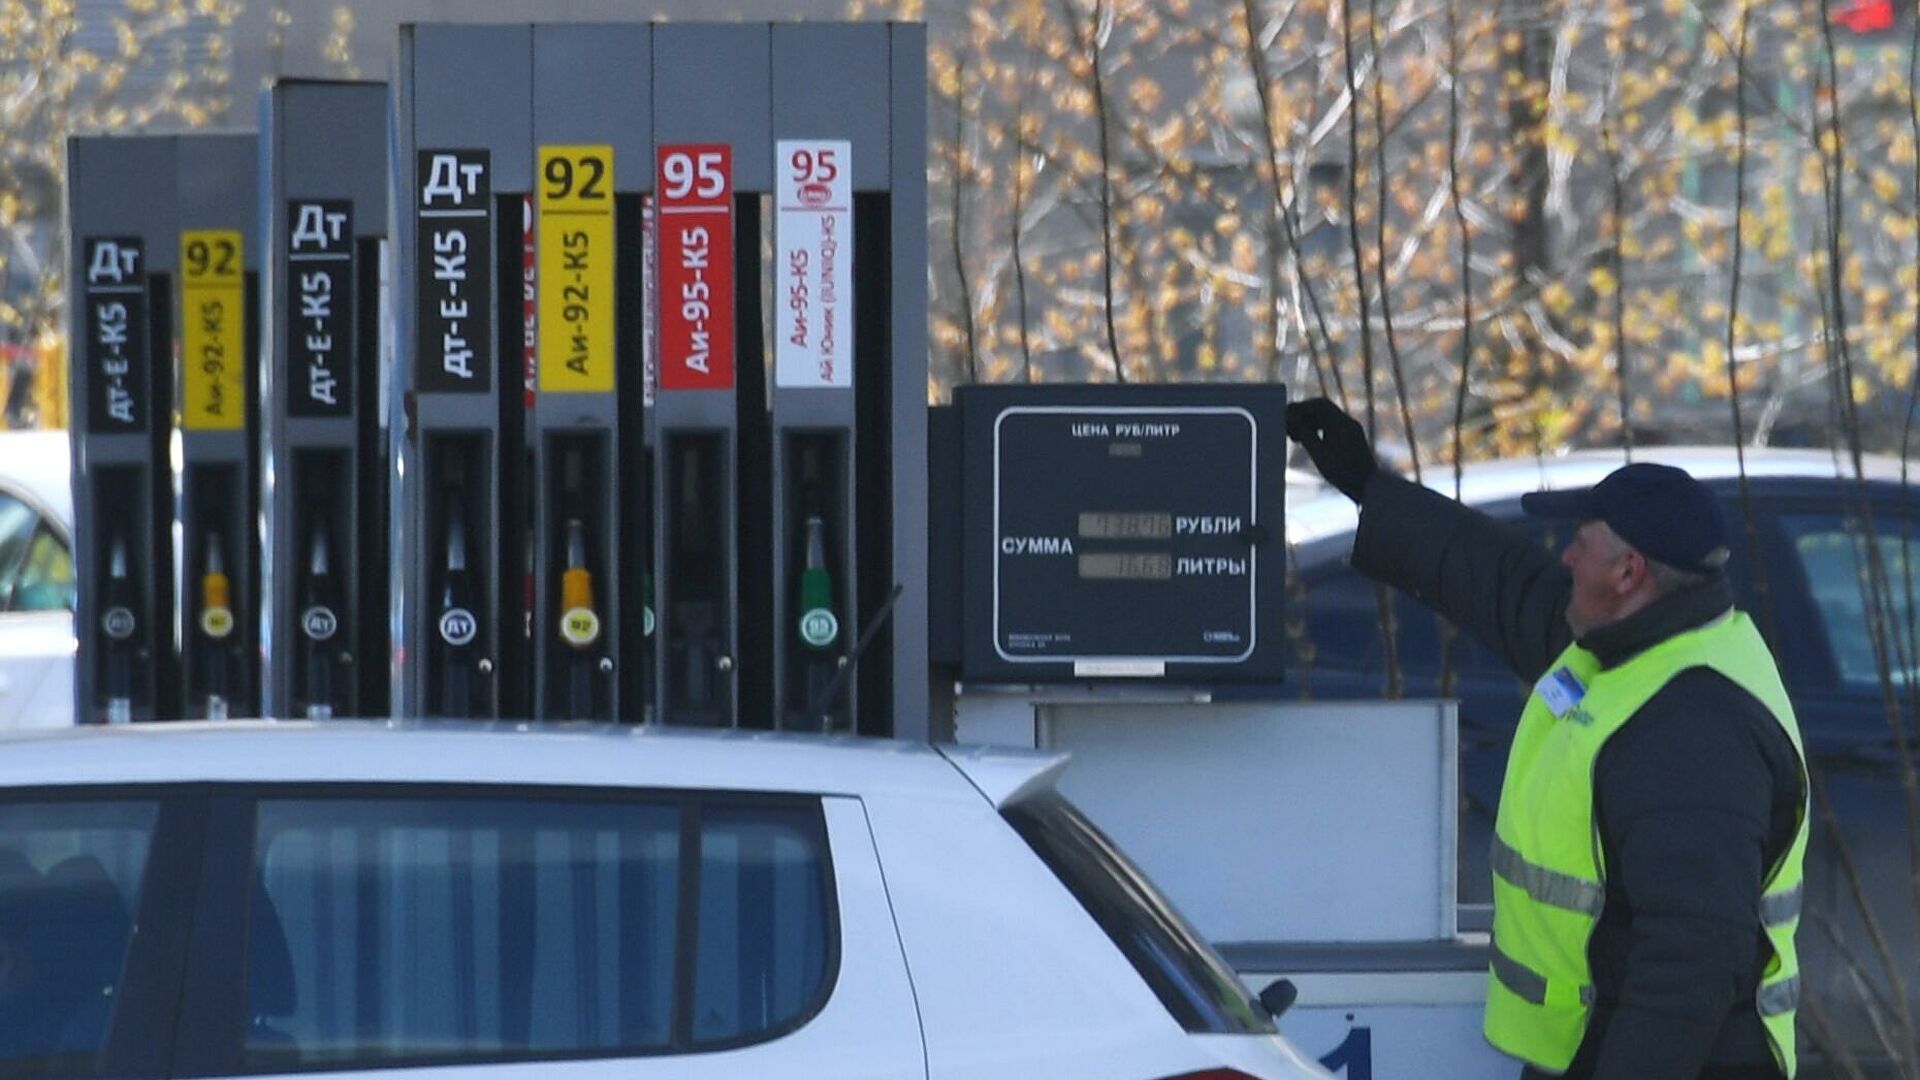 Сколько стоит бензин в европе в рублях по странам